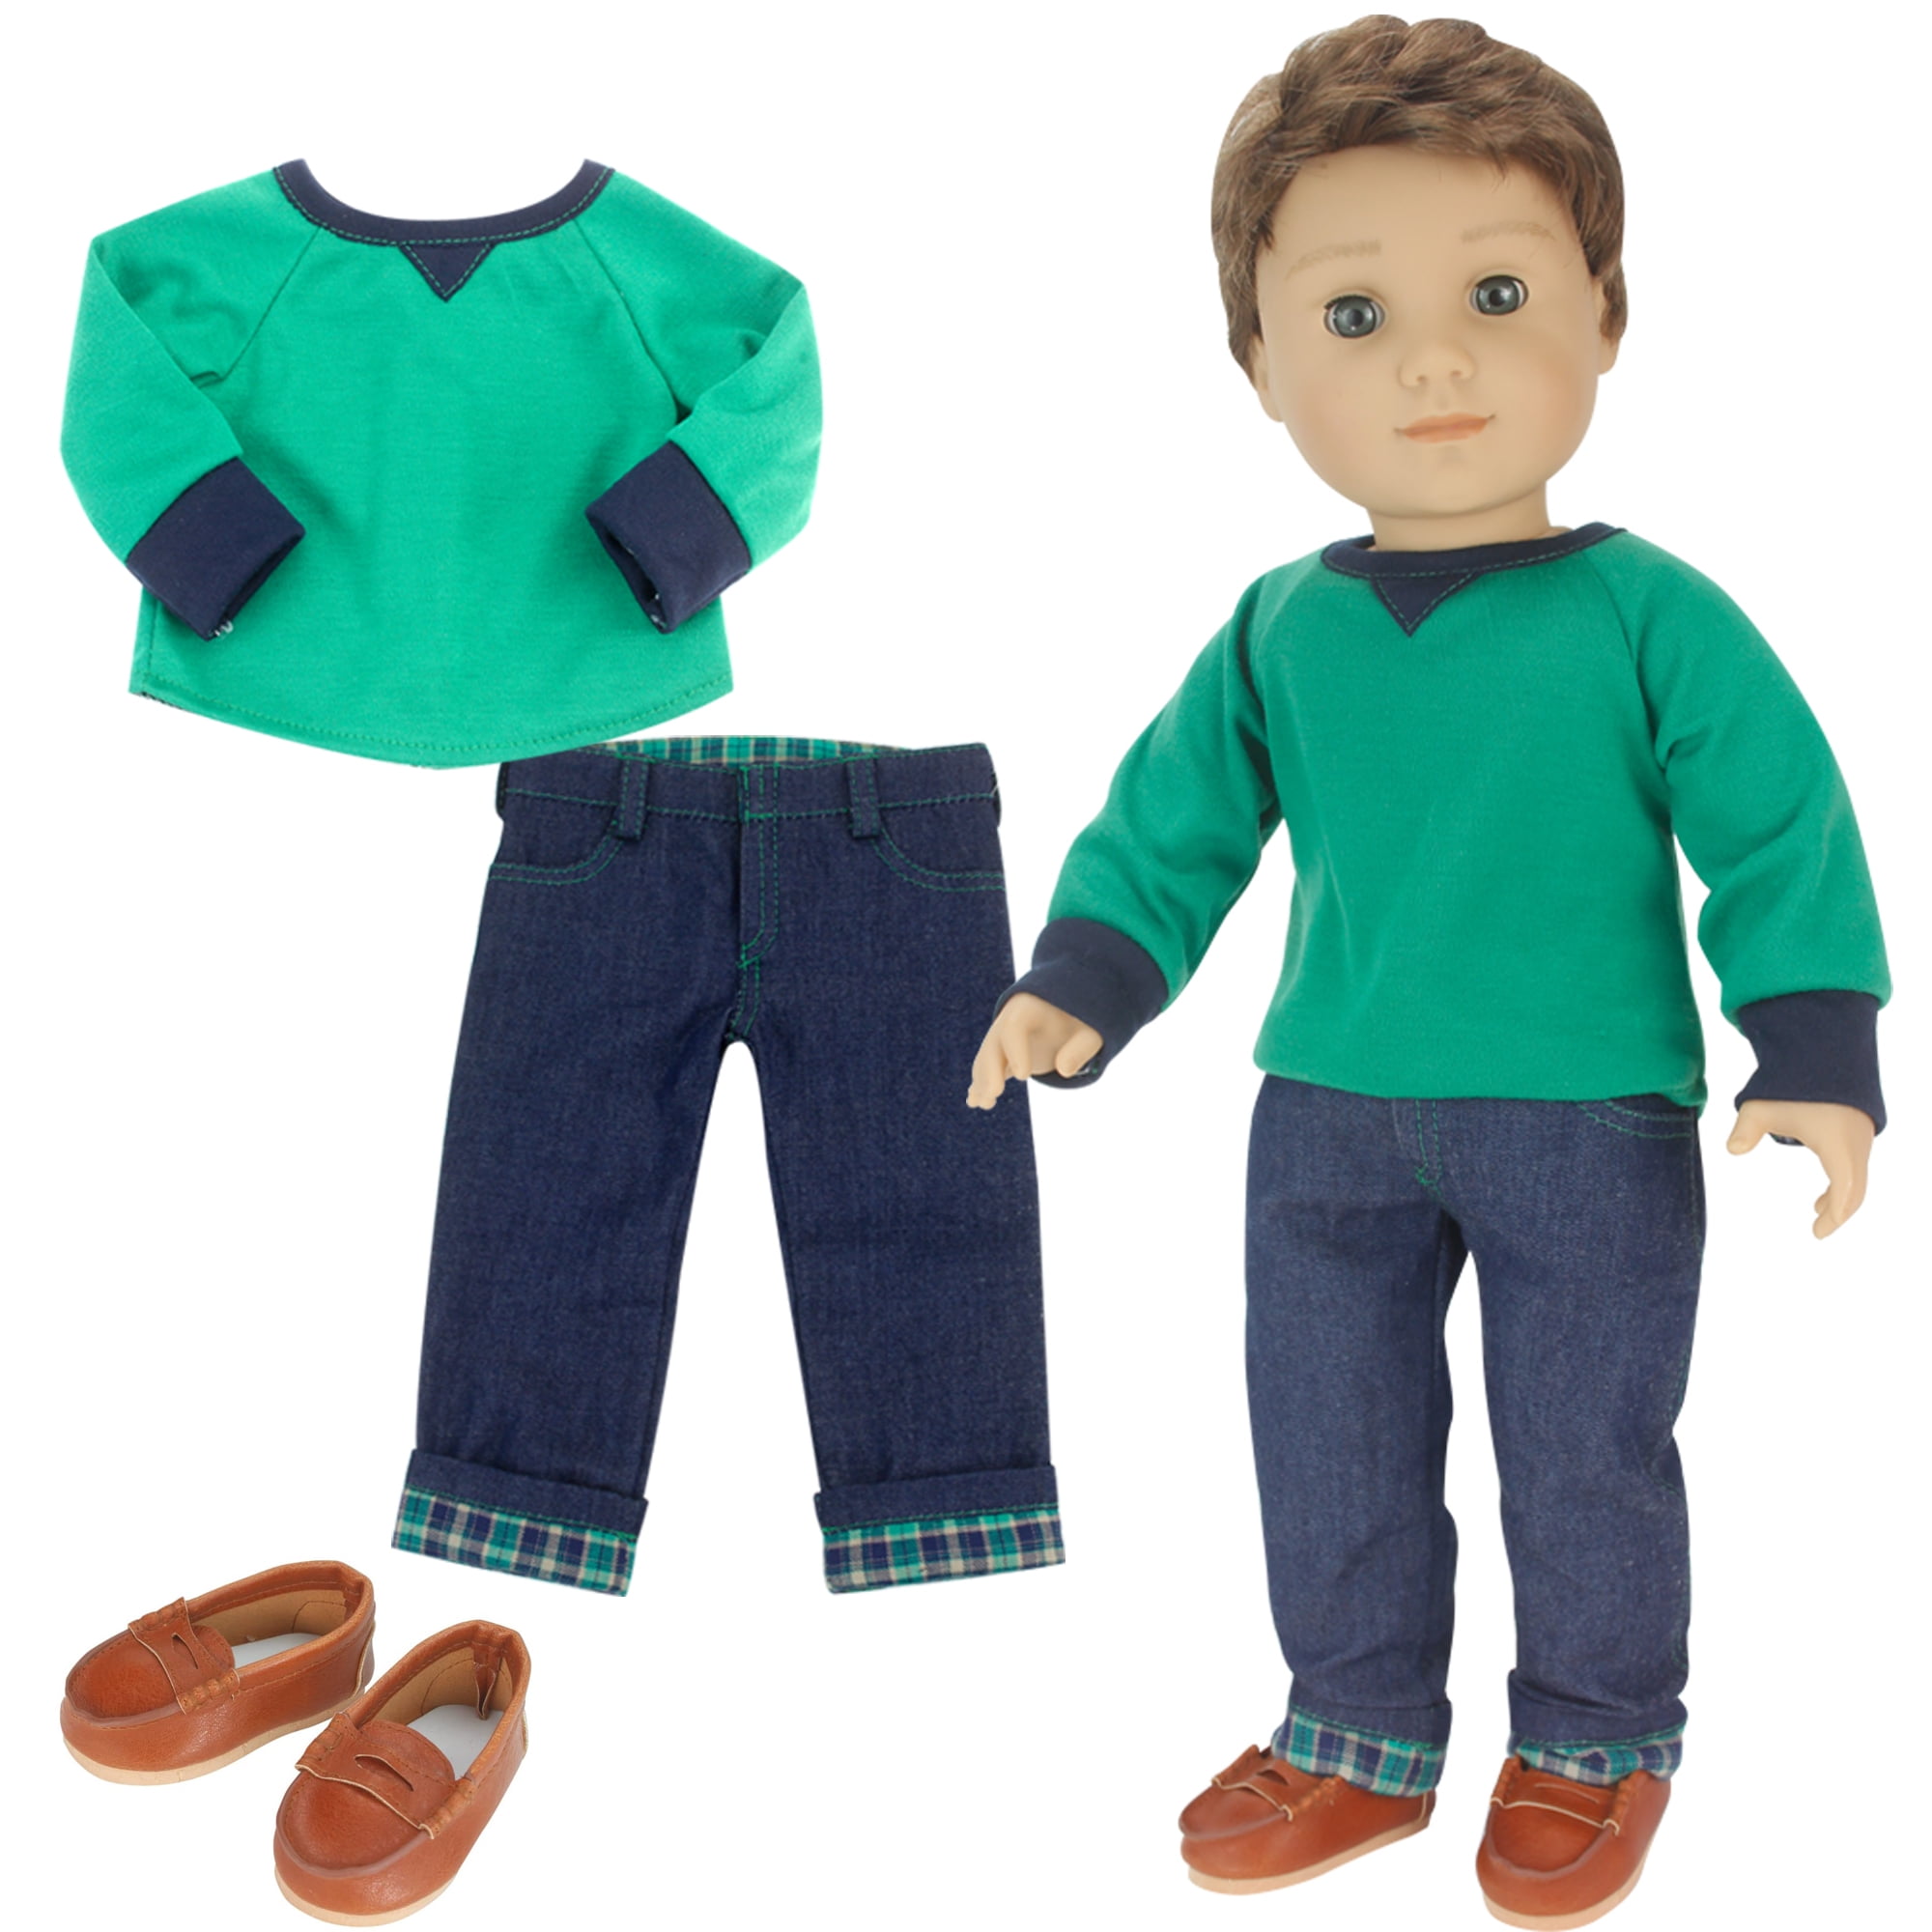 18 inch Doll Clothes Fits American Girl or Boy Dolls Dark Wash Denim Cuff Jeans